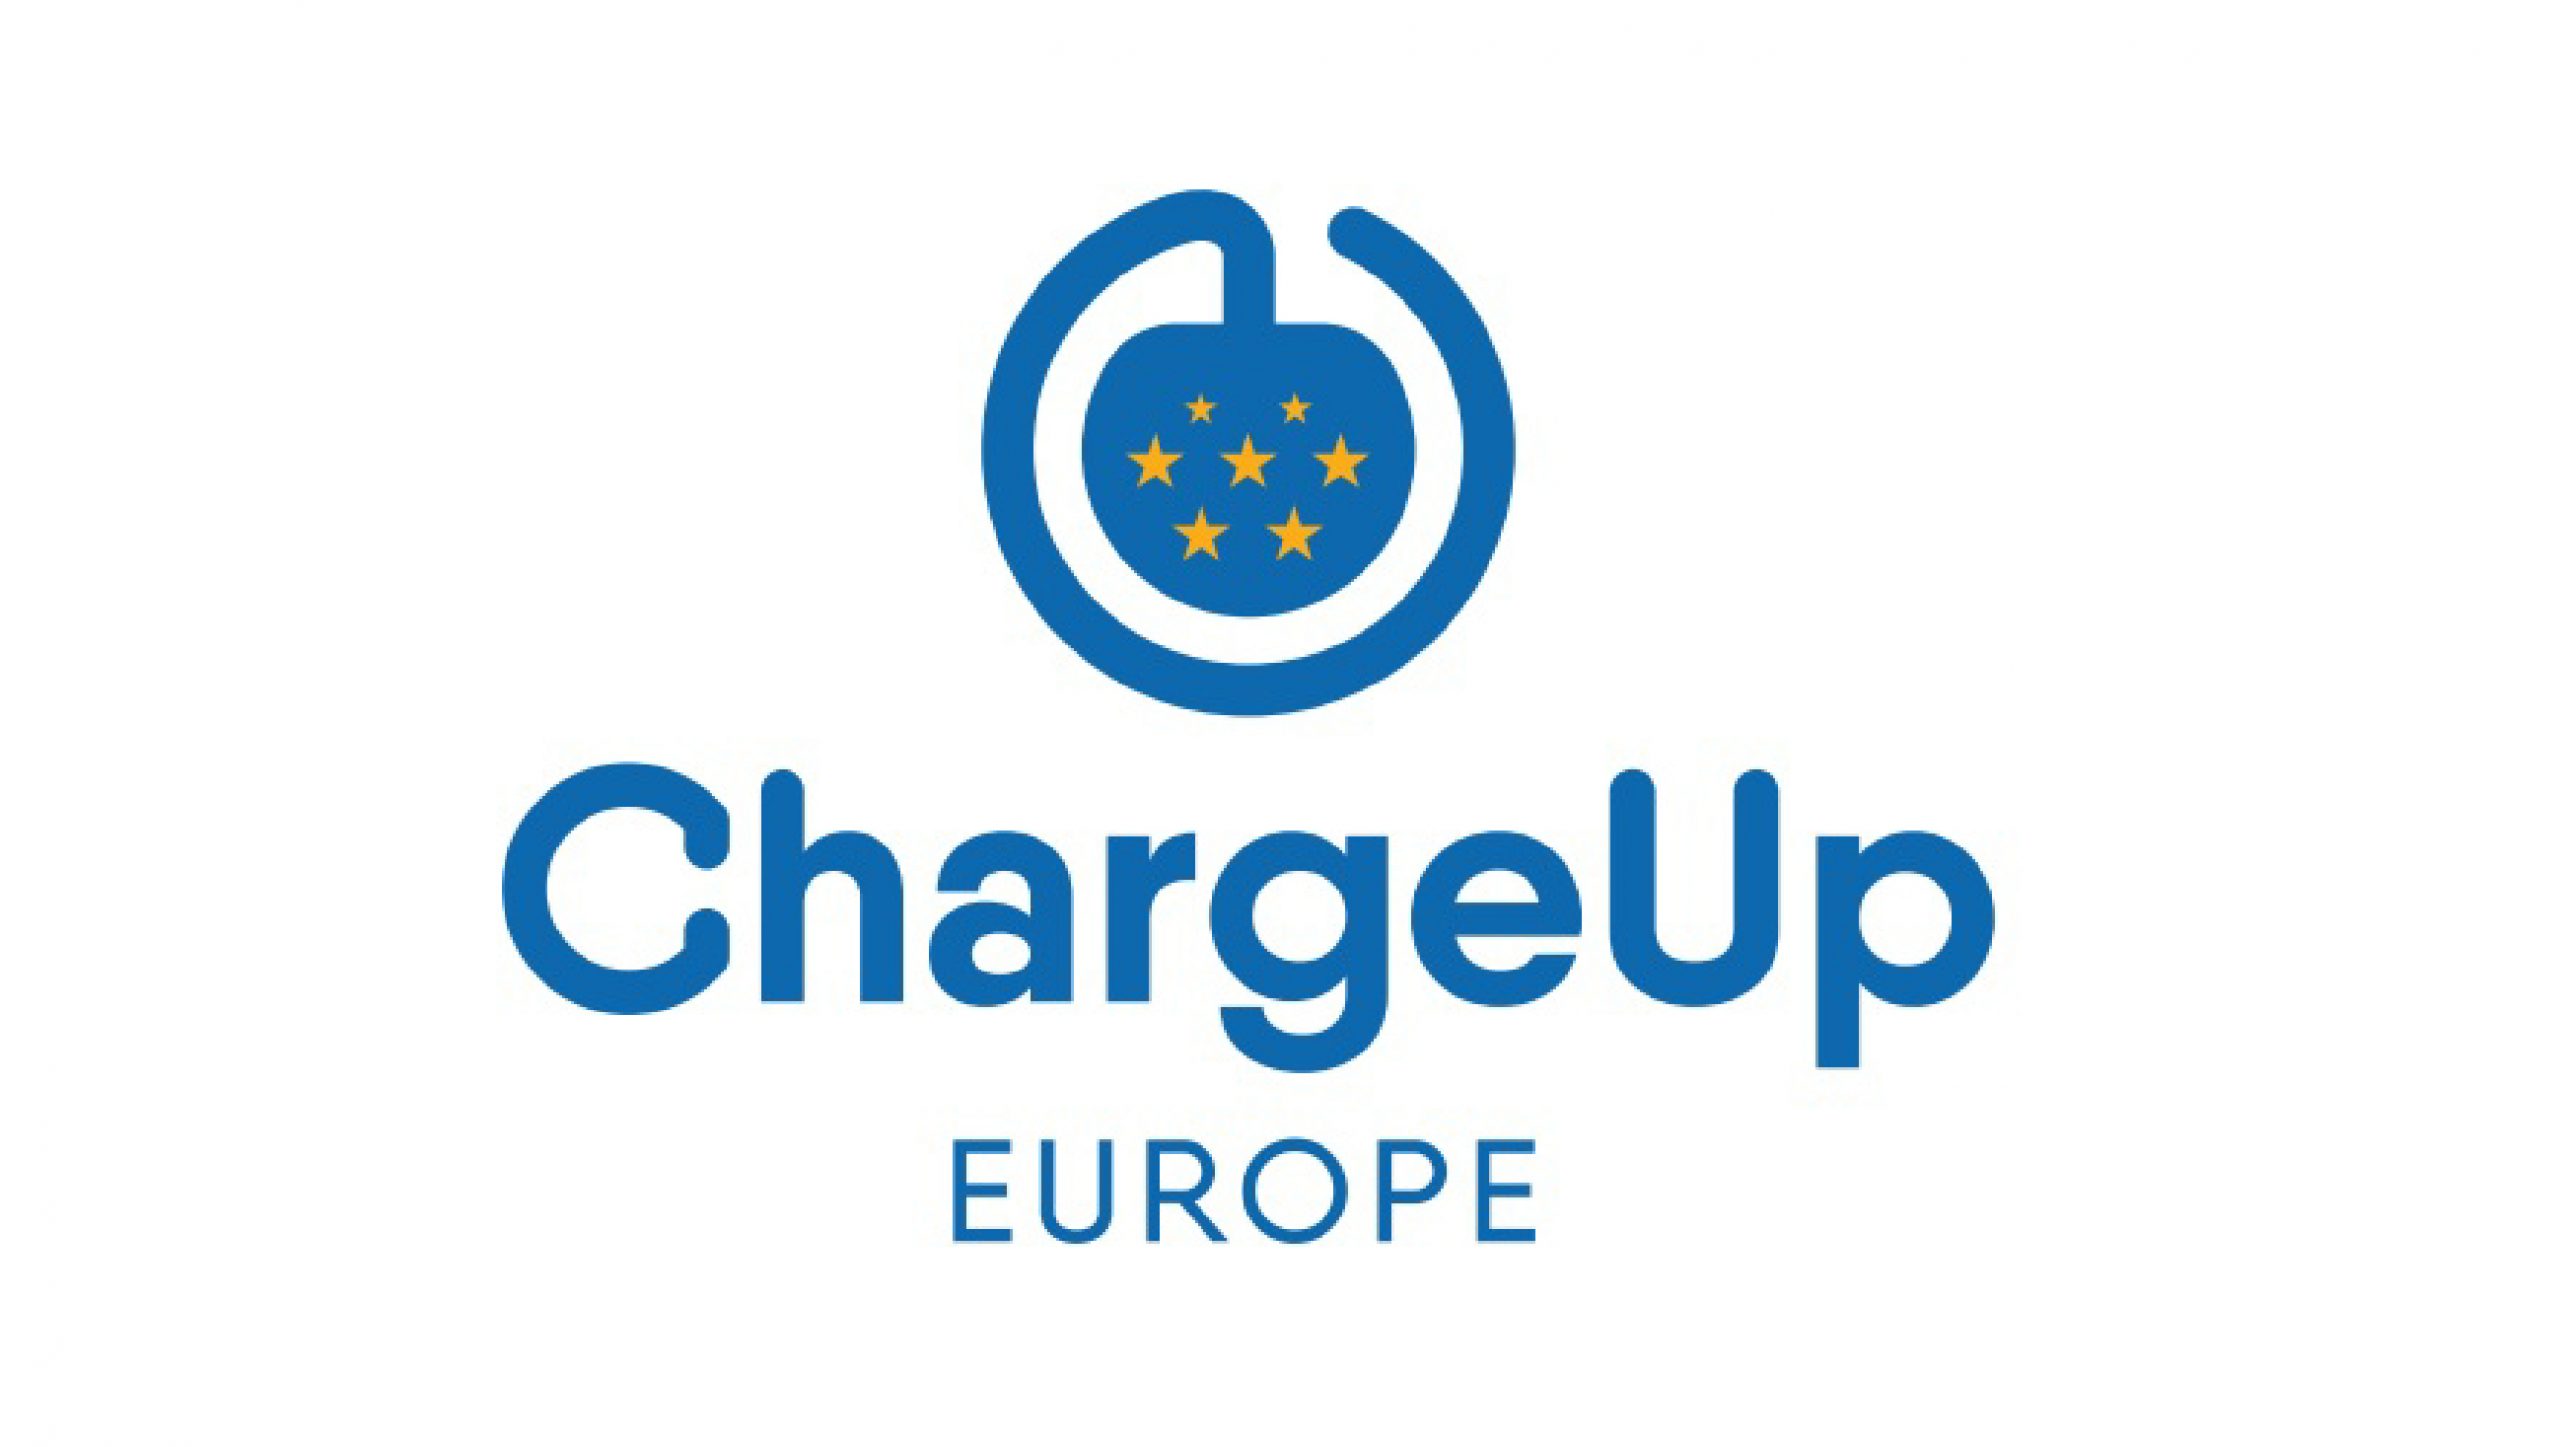 , ChargeUp Europe welcomes Ekoenergetyka as its 15th member, Ekoenergetyka